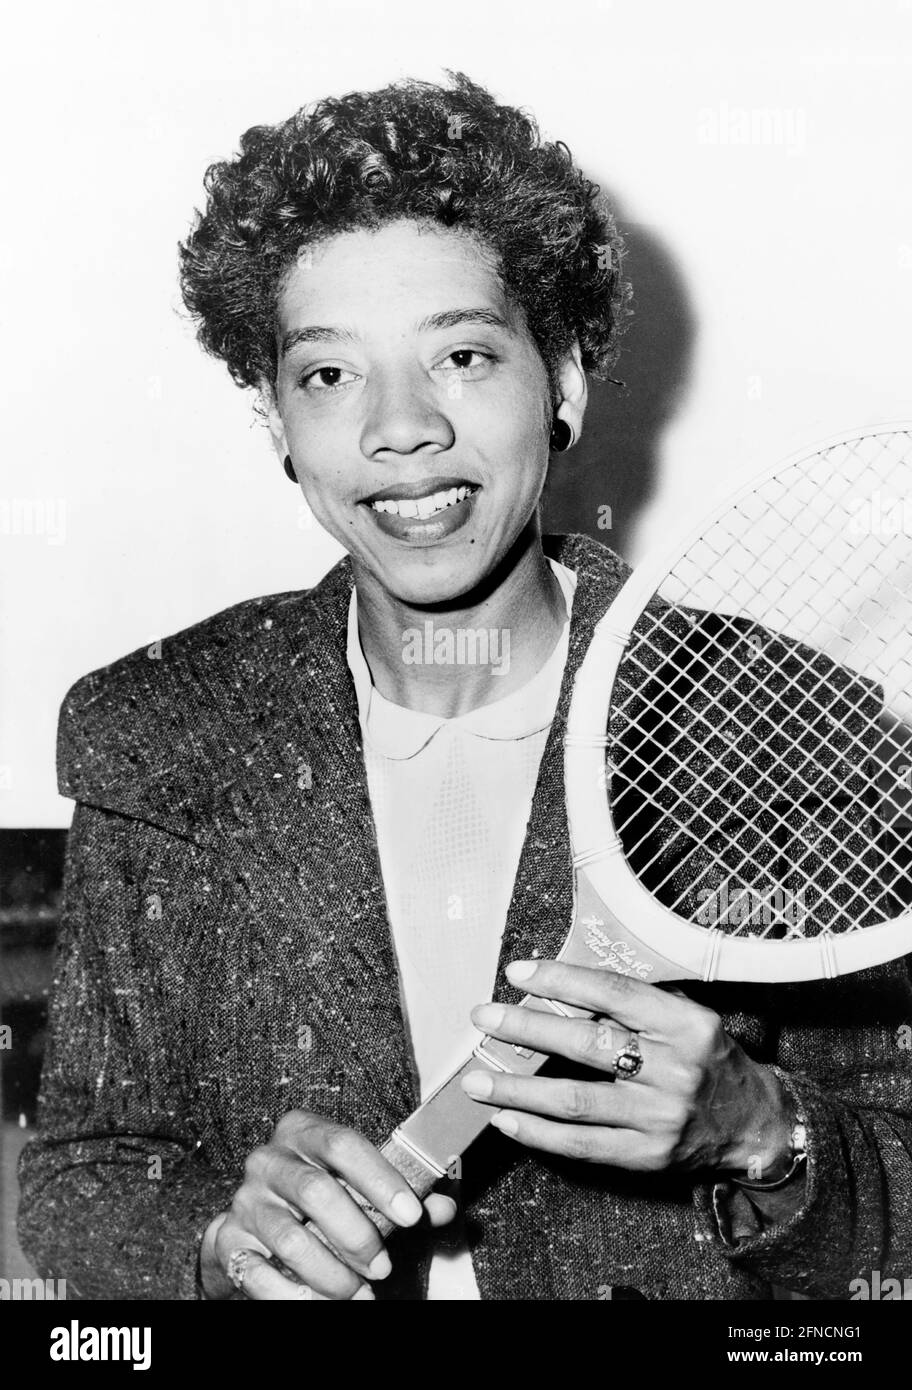 Althea Gibson. Porträt des amerikanischen Tennisspielers Althea Neale Gibson (1927-2003) im Jahr 1956. Foto von Fred Palumbo. Stockfoto